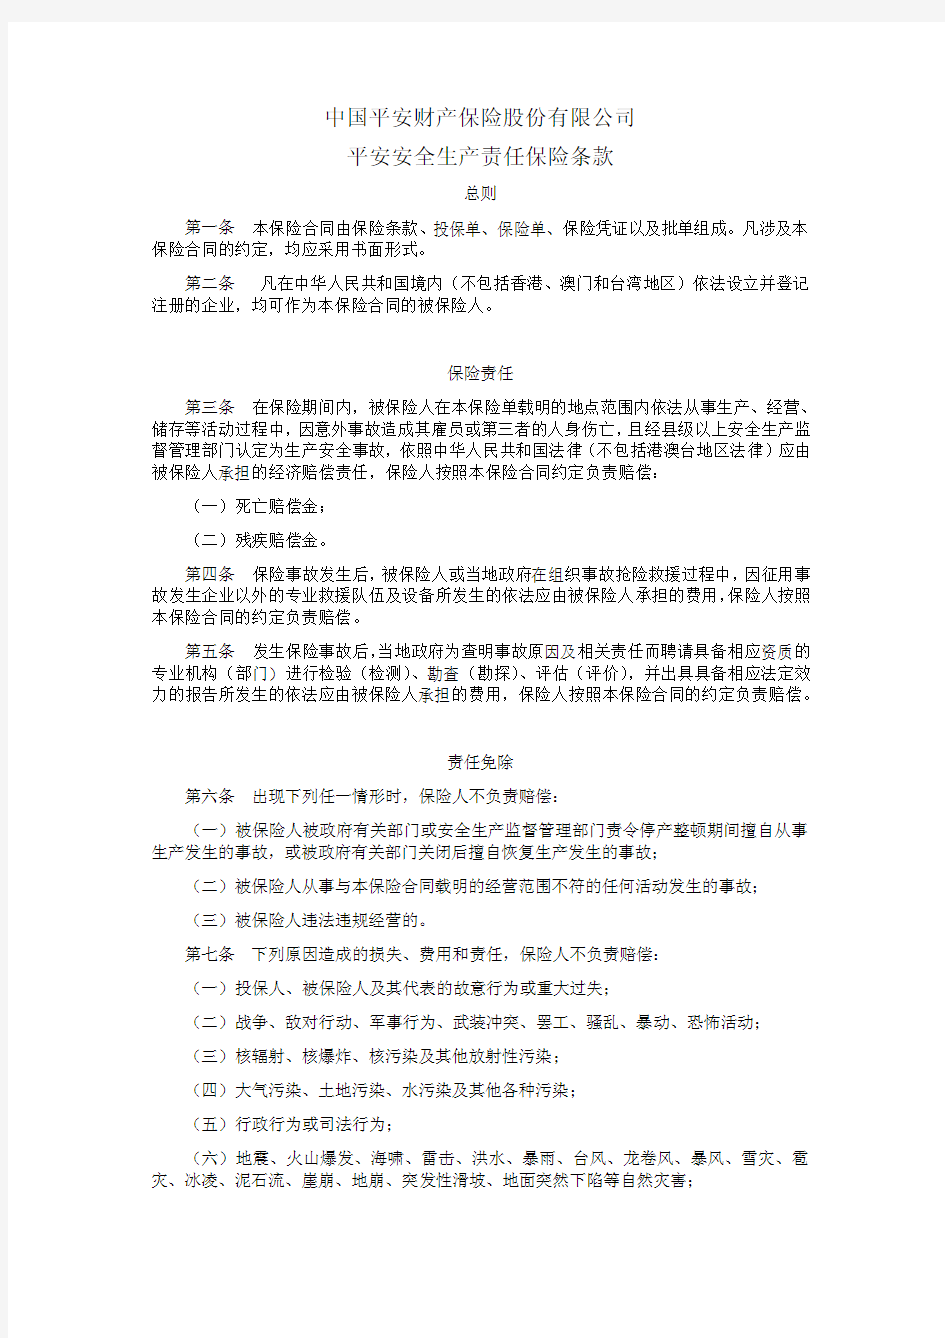 中国平安财产保险股份有限公司平安安全生产责任保险条款